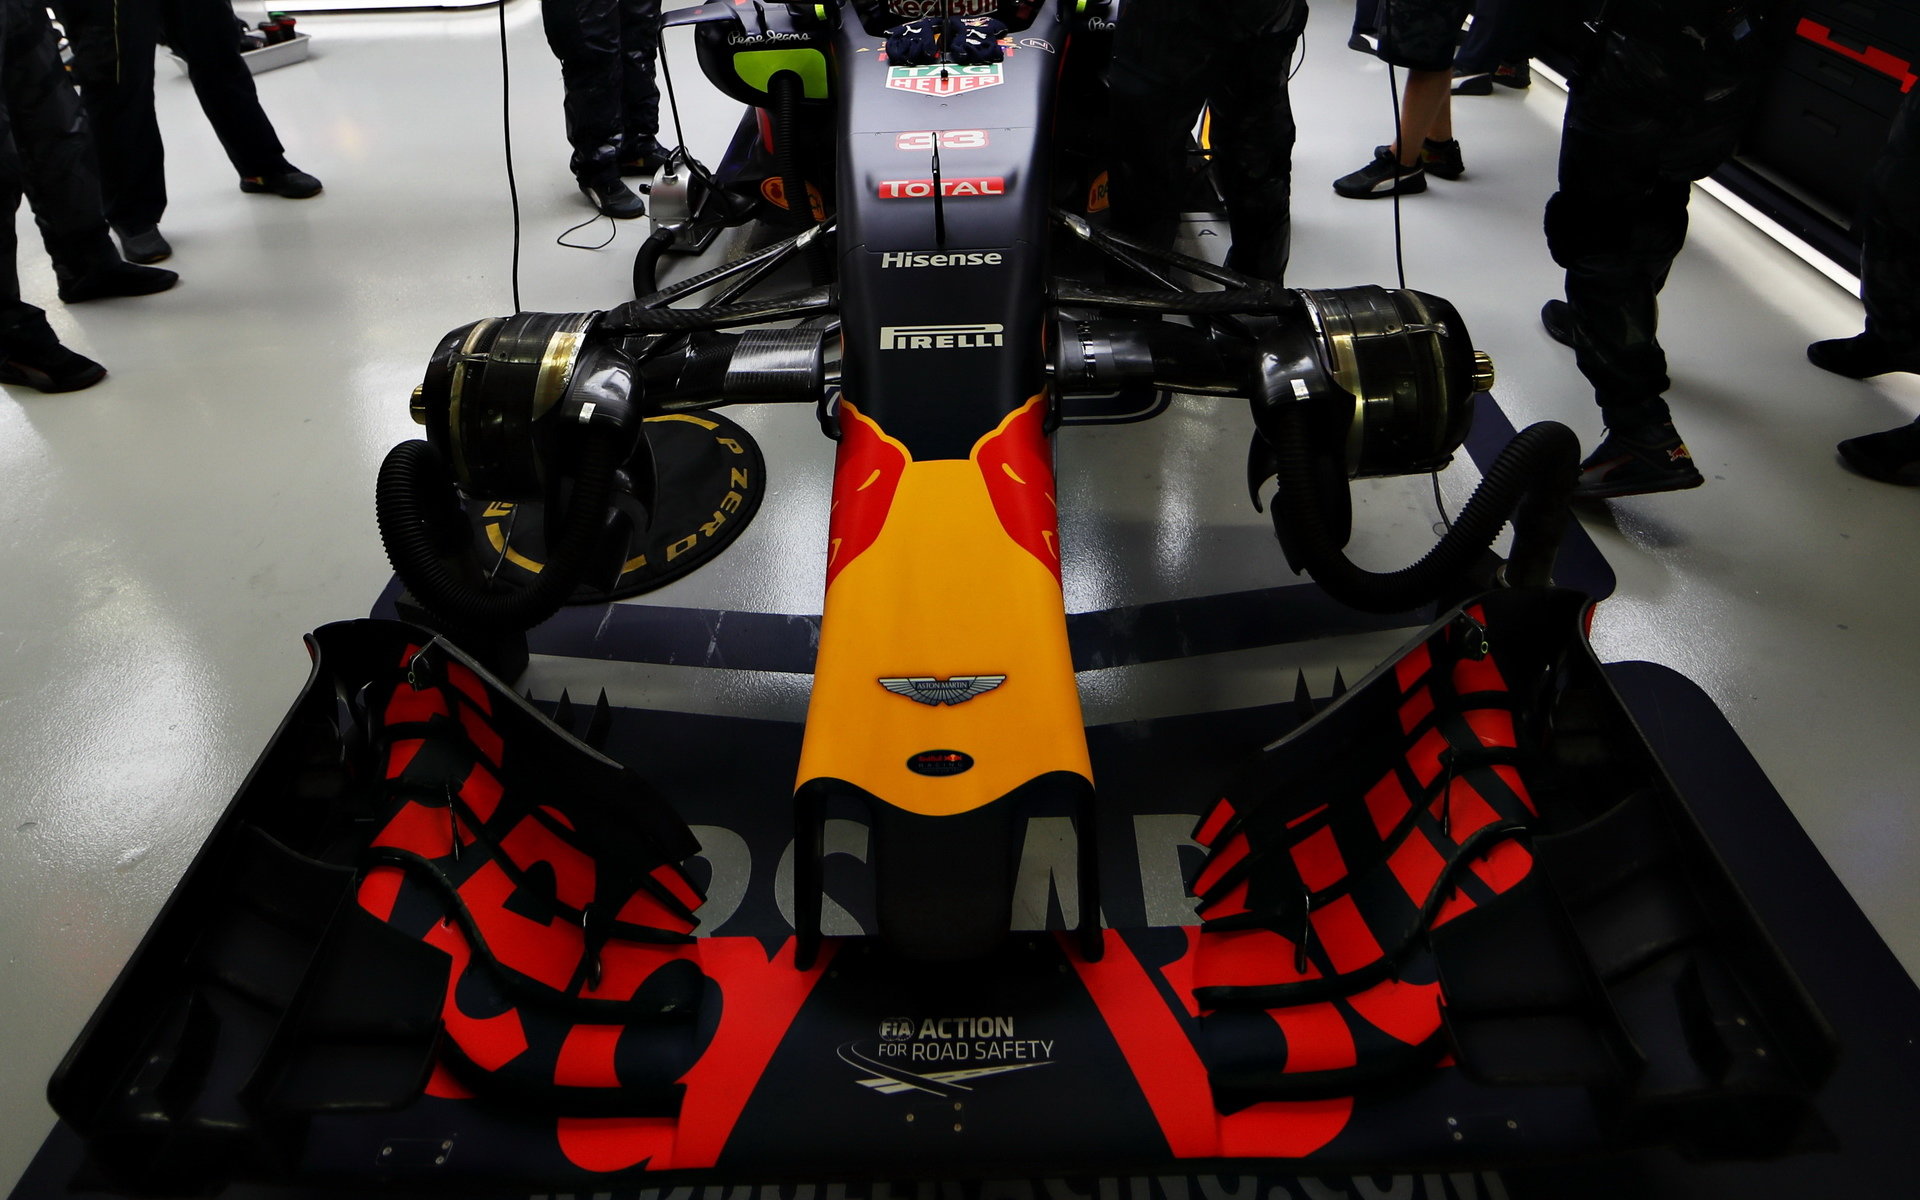 Přední křídlo vozu Red Bull RB12 - Renault v Singapuru